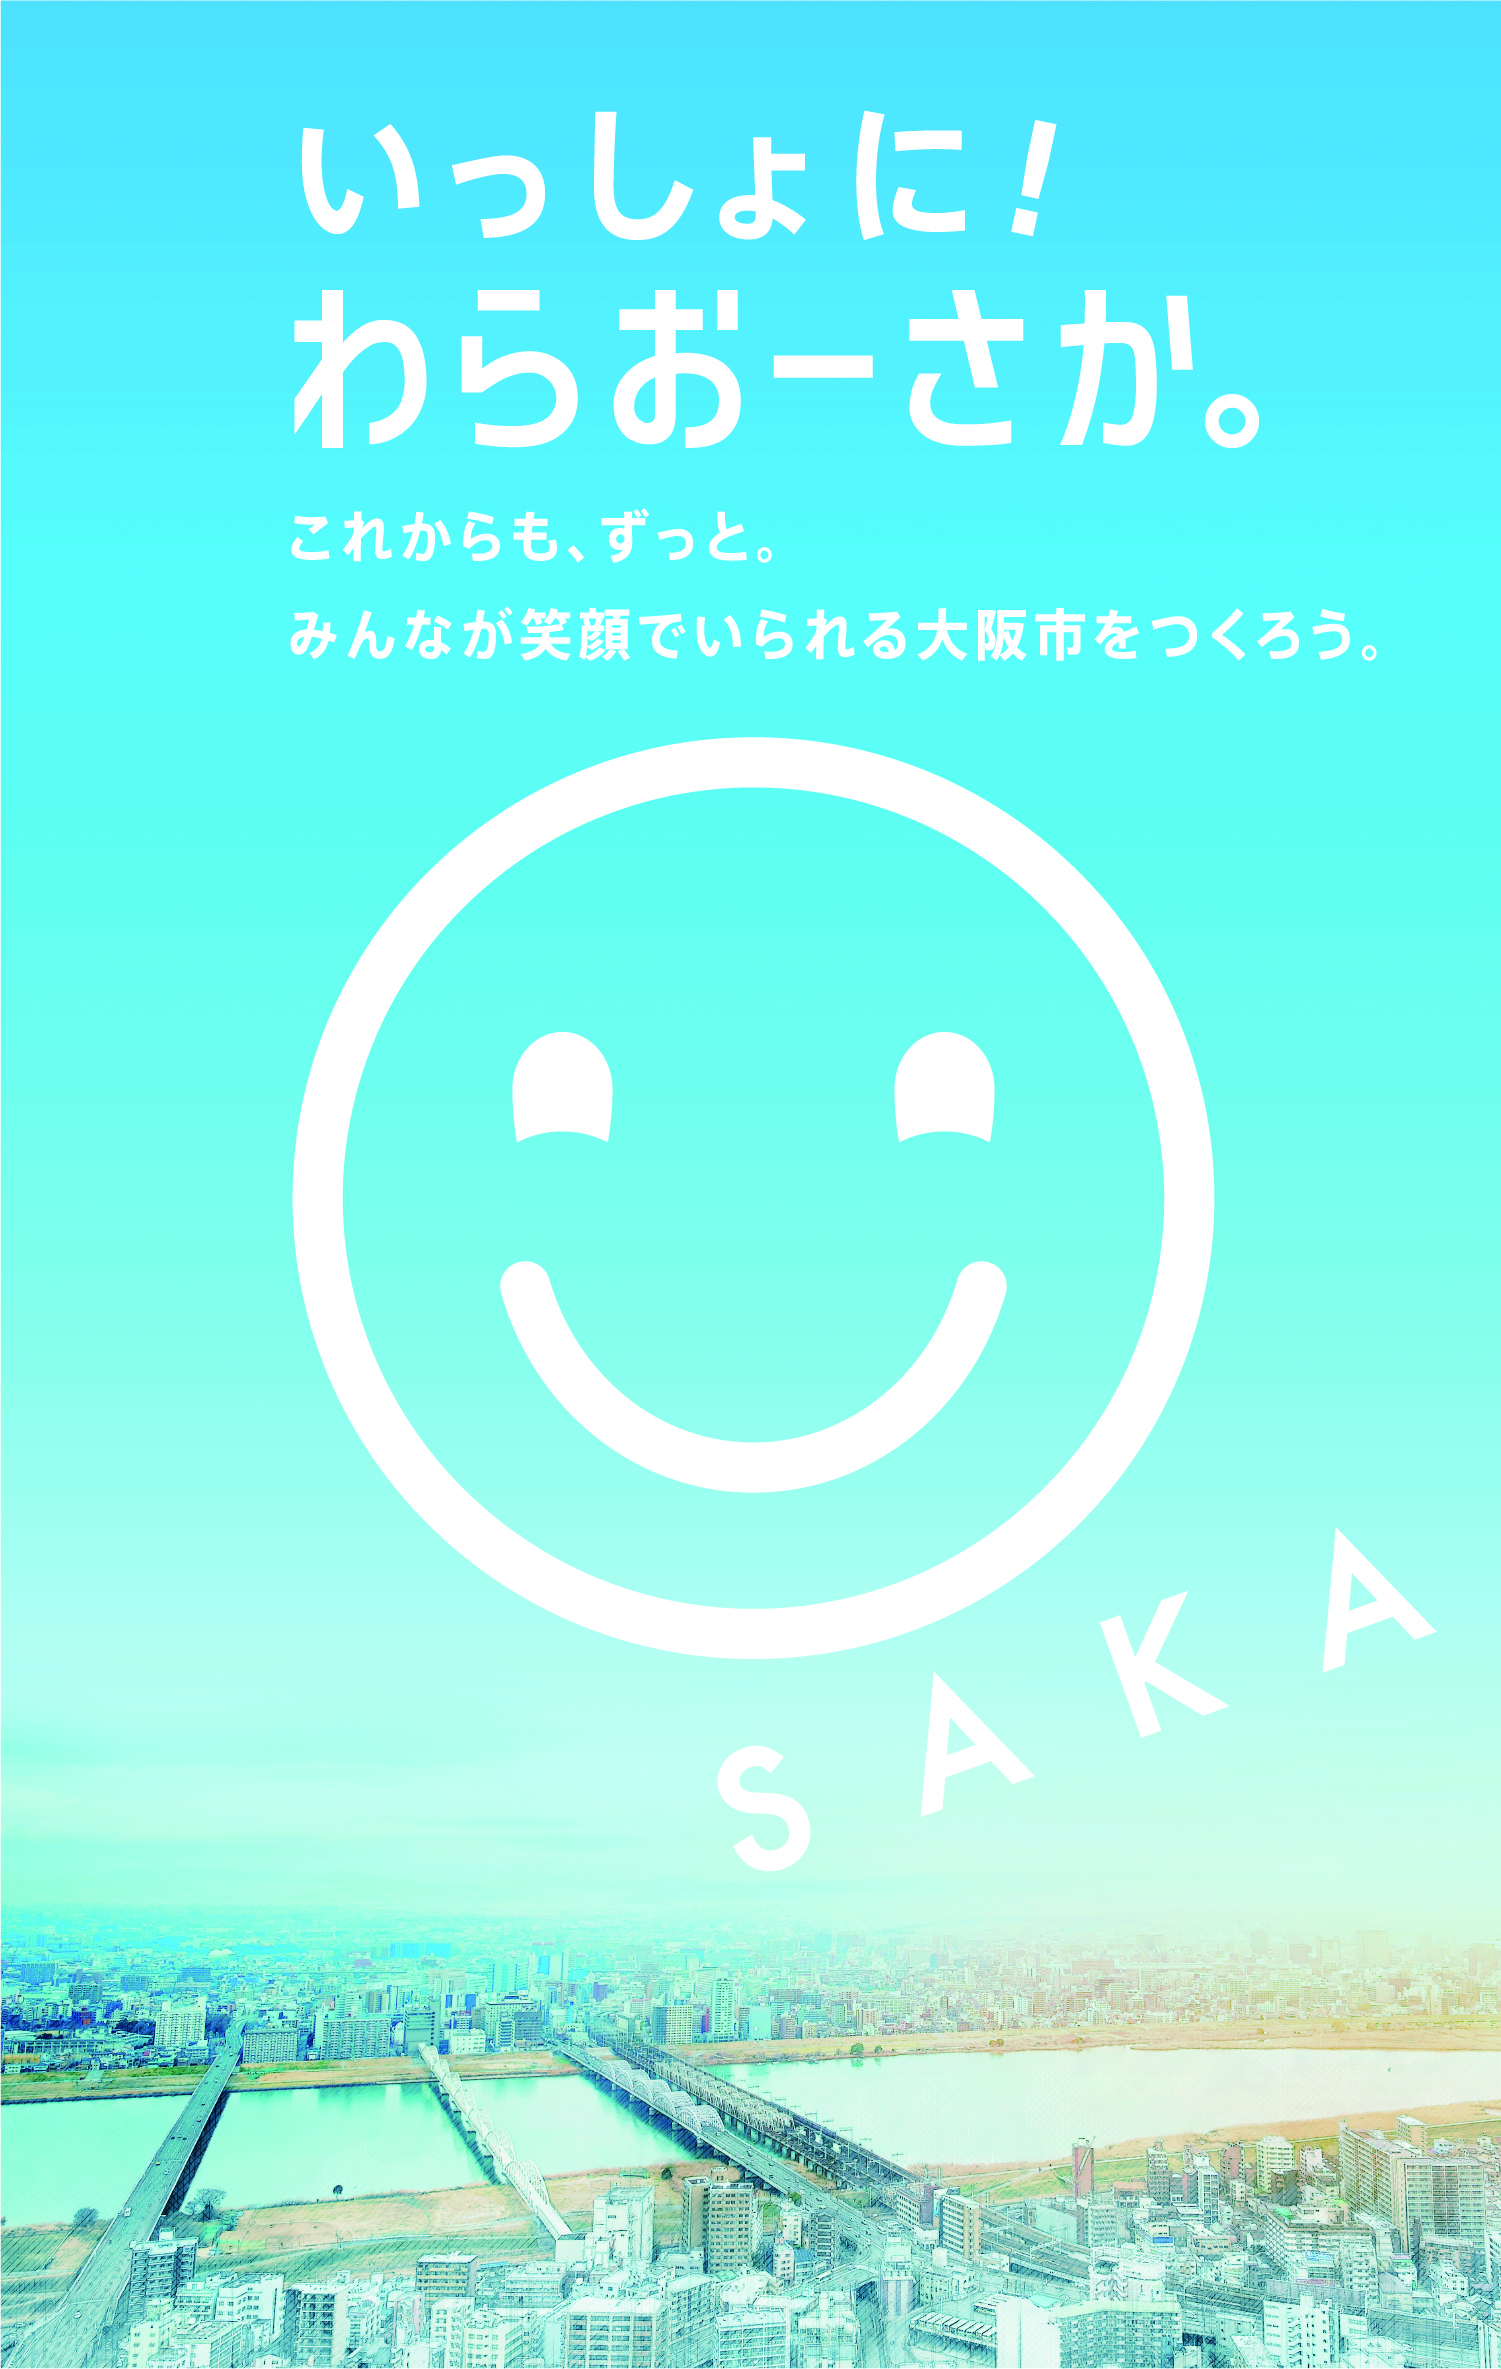 いっしょに！ わらおーさか これからも、ずっと。みんなが笑顔でいられる大阪市をつくろう。